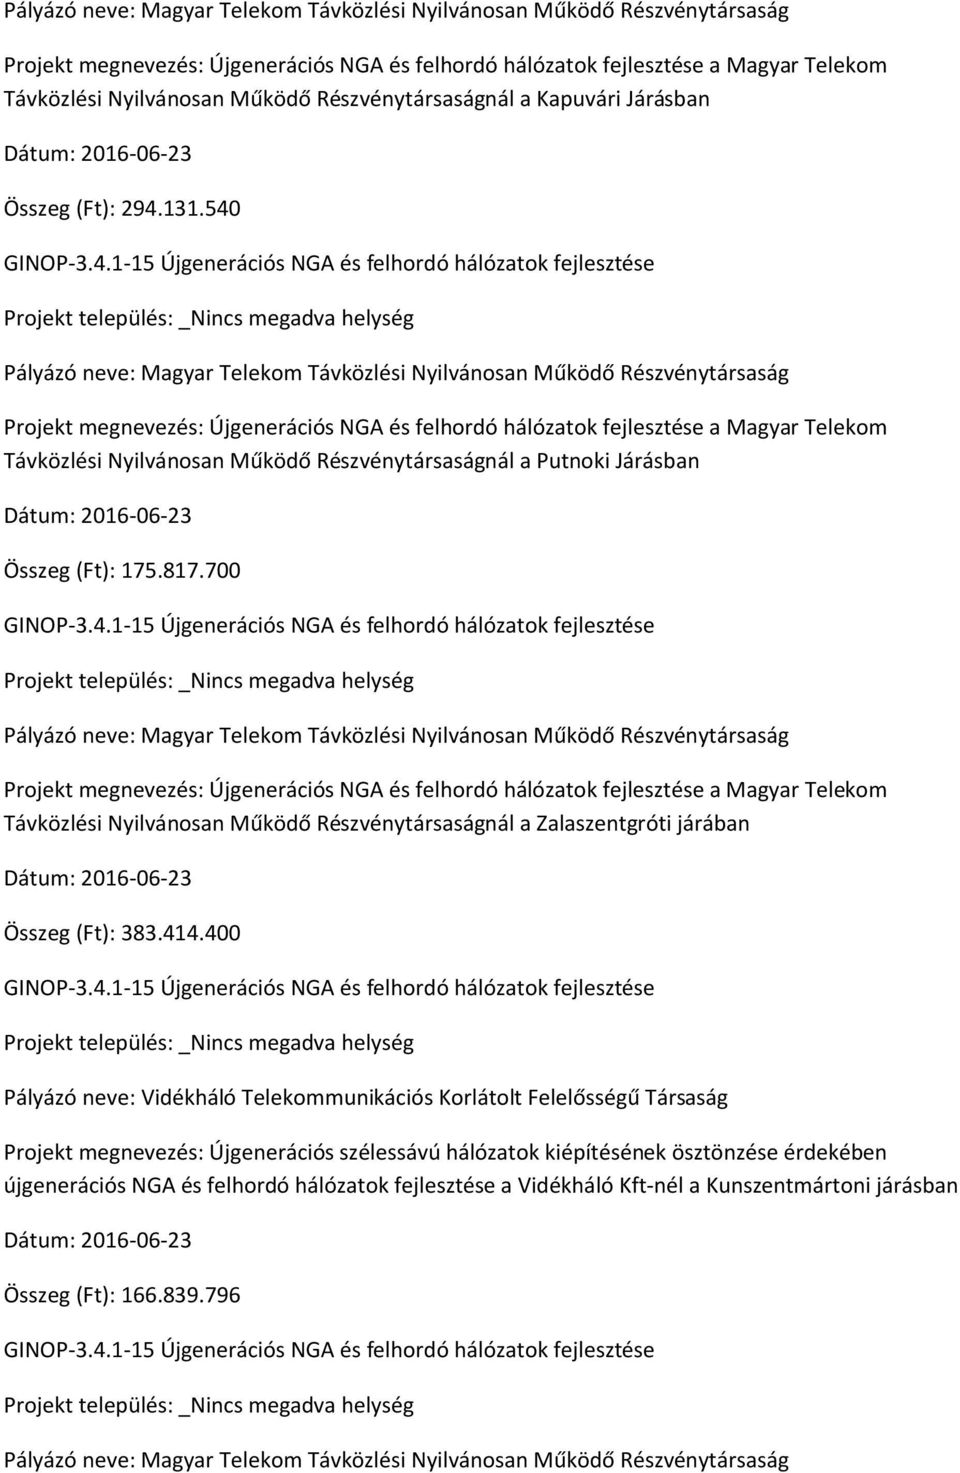 700 Projekt megnevezés: Újgenerációs NGA és felhordó hálózatok fejlesztése a Magyar Telekom Távközlési Nyilvánosan Működő Részvénytársaságnál a Zalaszentgróti járában Összeg (Ft): 383.414.